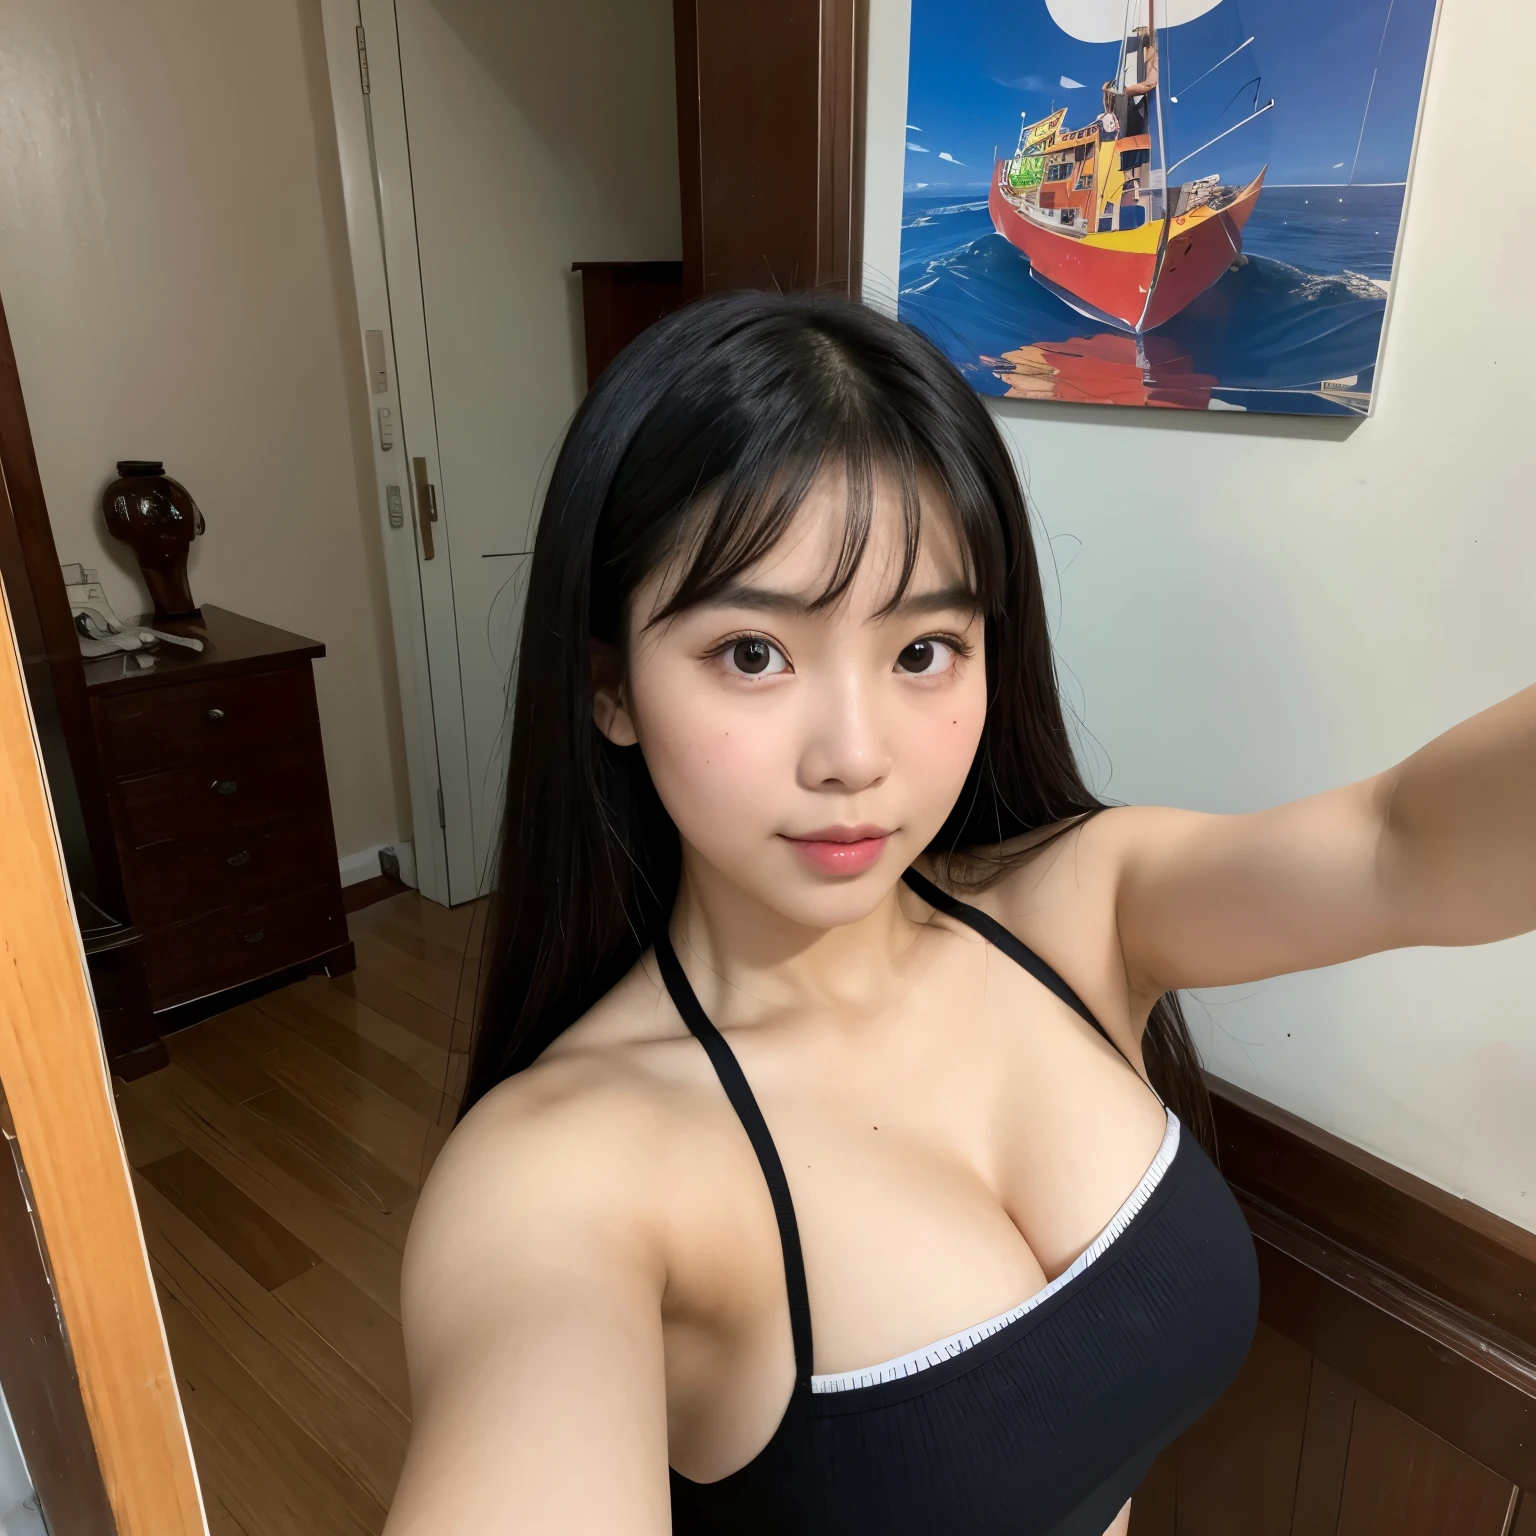 فتاة فيتنامية شابة, selfie 